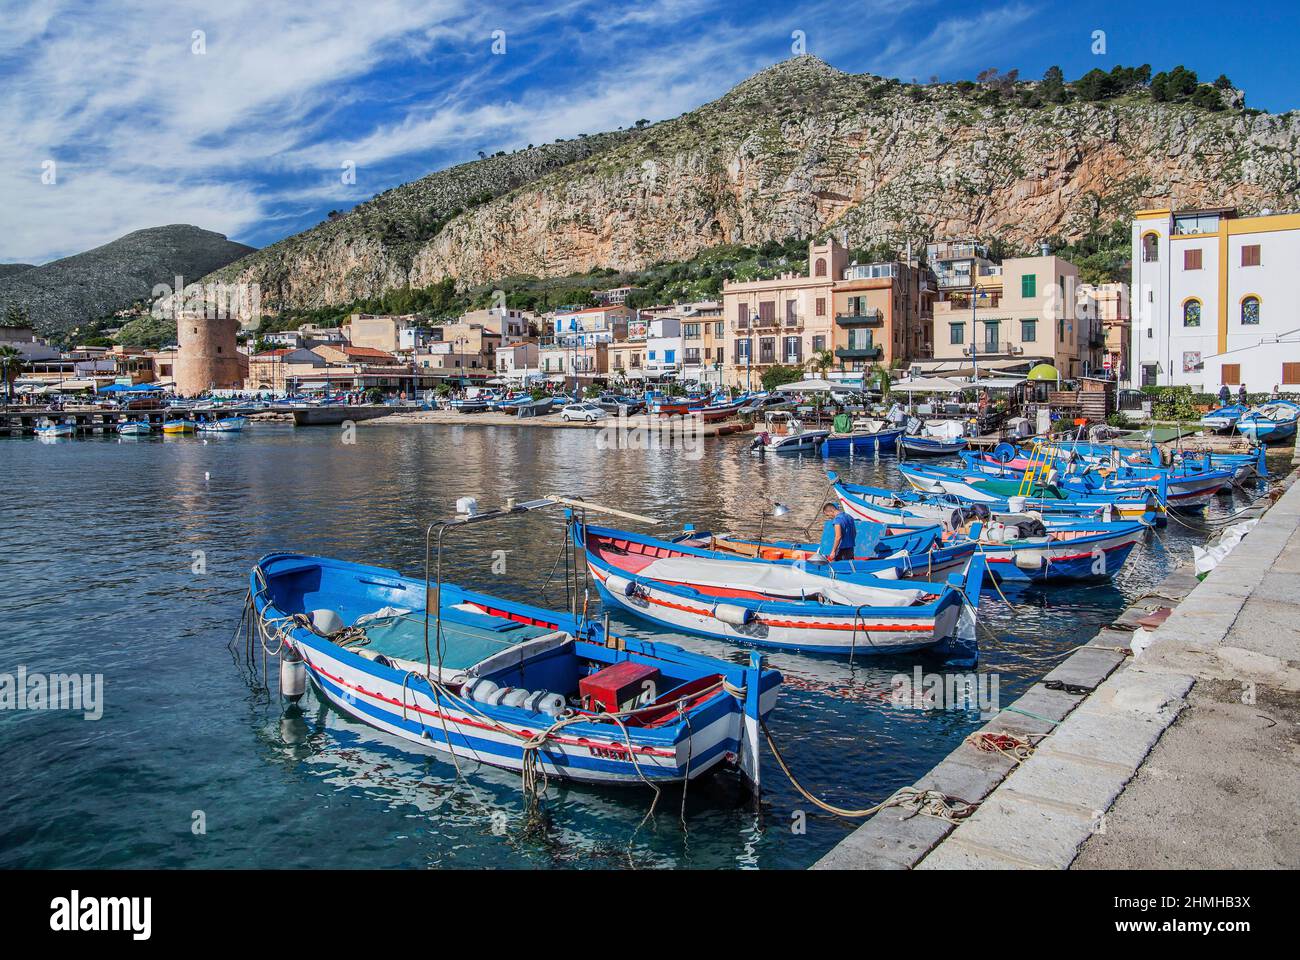 Porto di pesca con barche da pesca nella località balneare di Mondello, Palermo, Sicilia, Italia Foto Stock